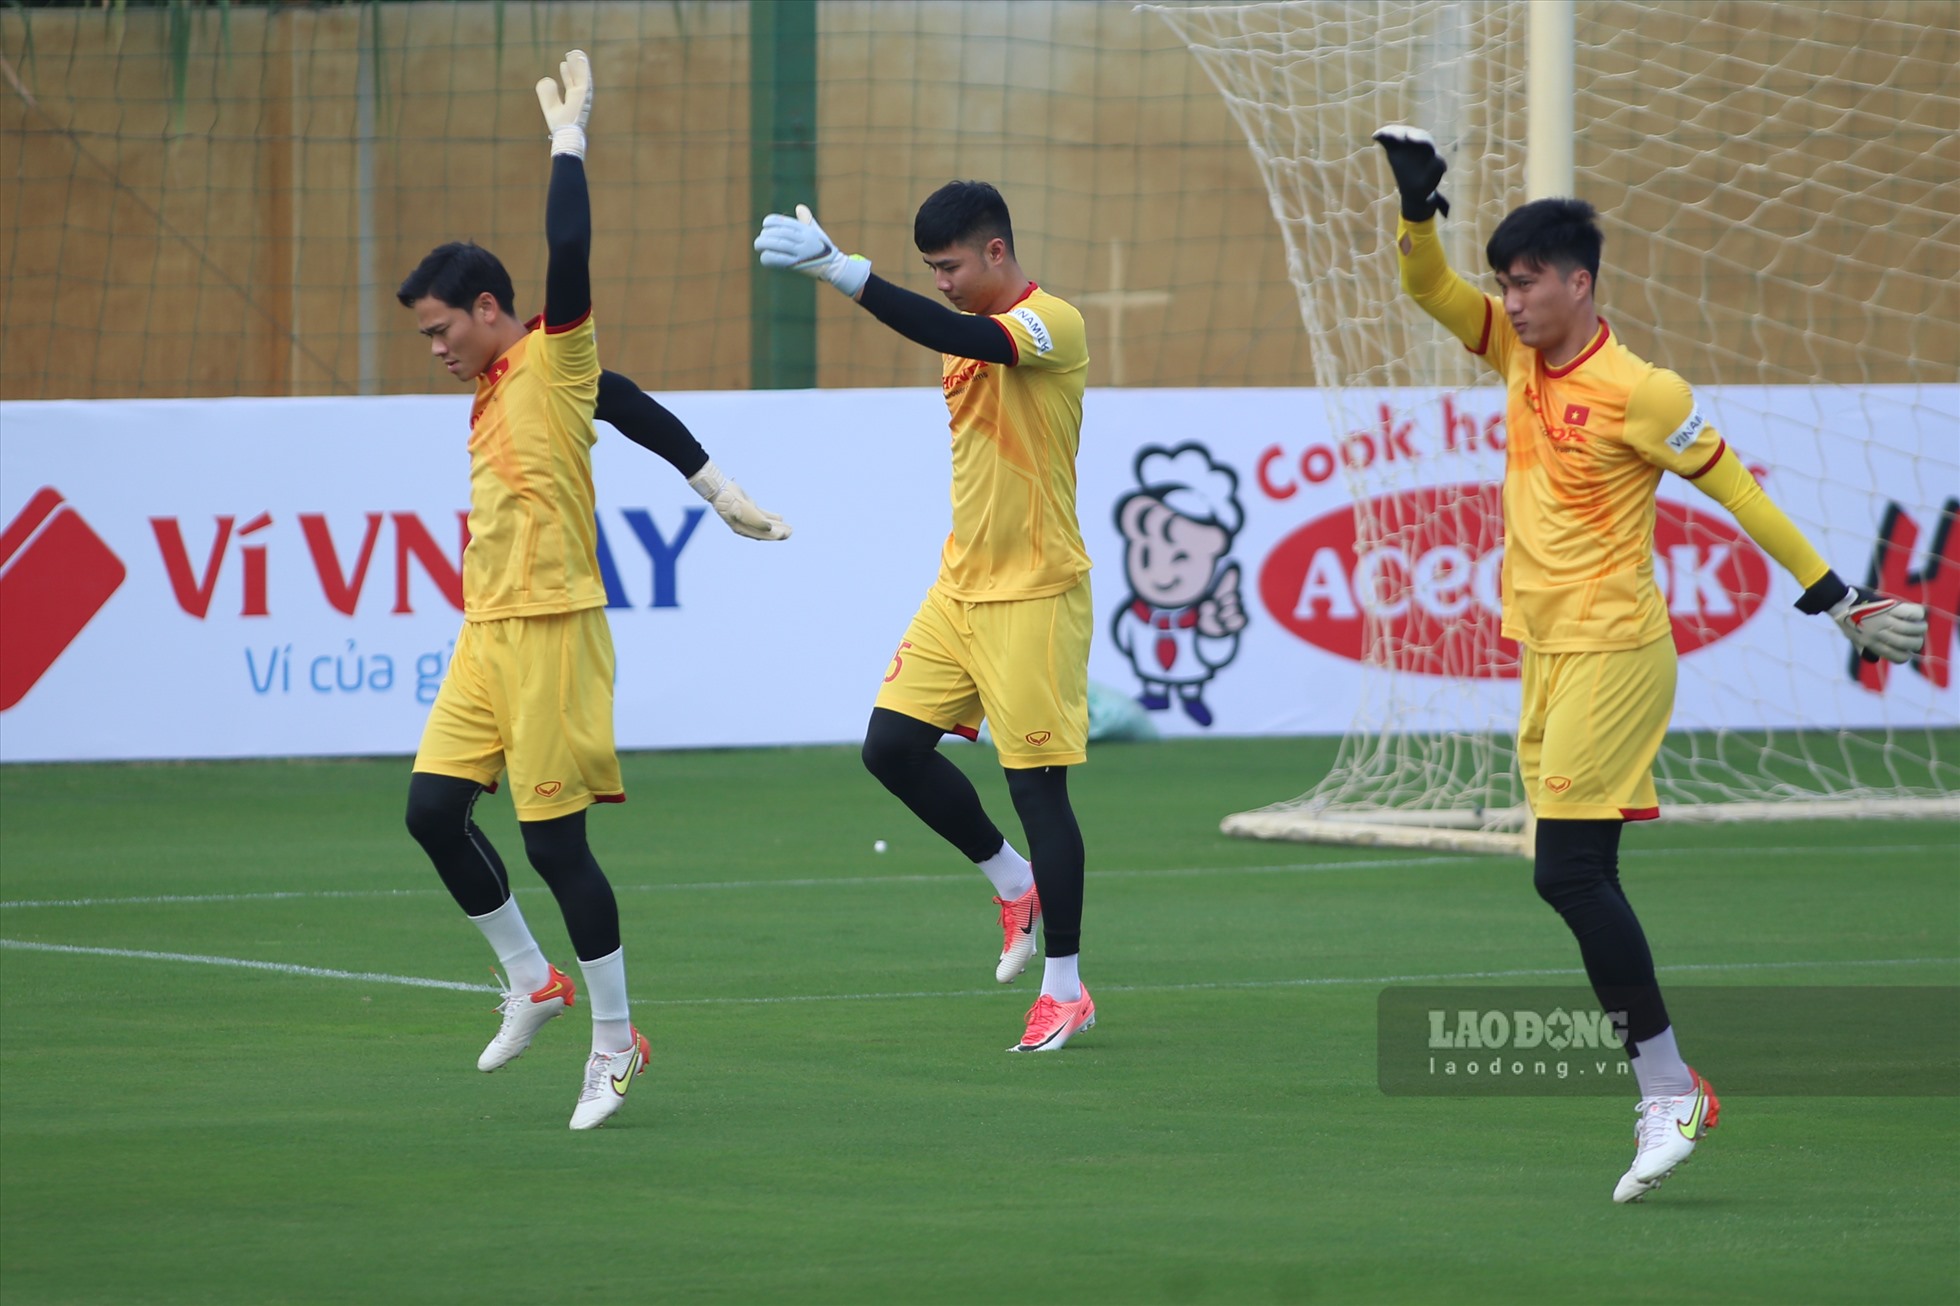 Trong 4 thủ môn được triệu tập còn thiếu Đặng Văn Lâm, ba thủ môn đã hội quân là Trần Nguyên Mạnh, Nguyễn Văn Toản và Nguyễn Văn Hoàng.